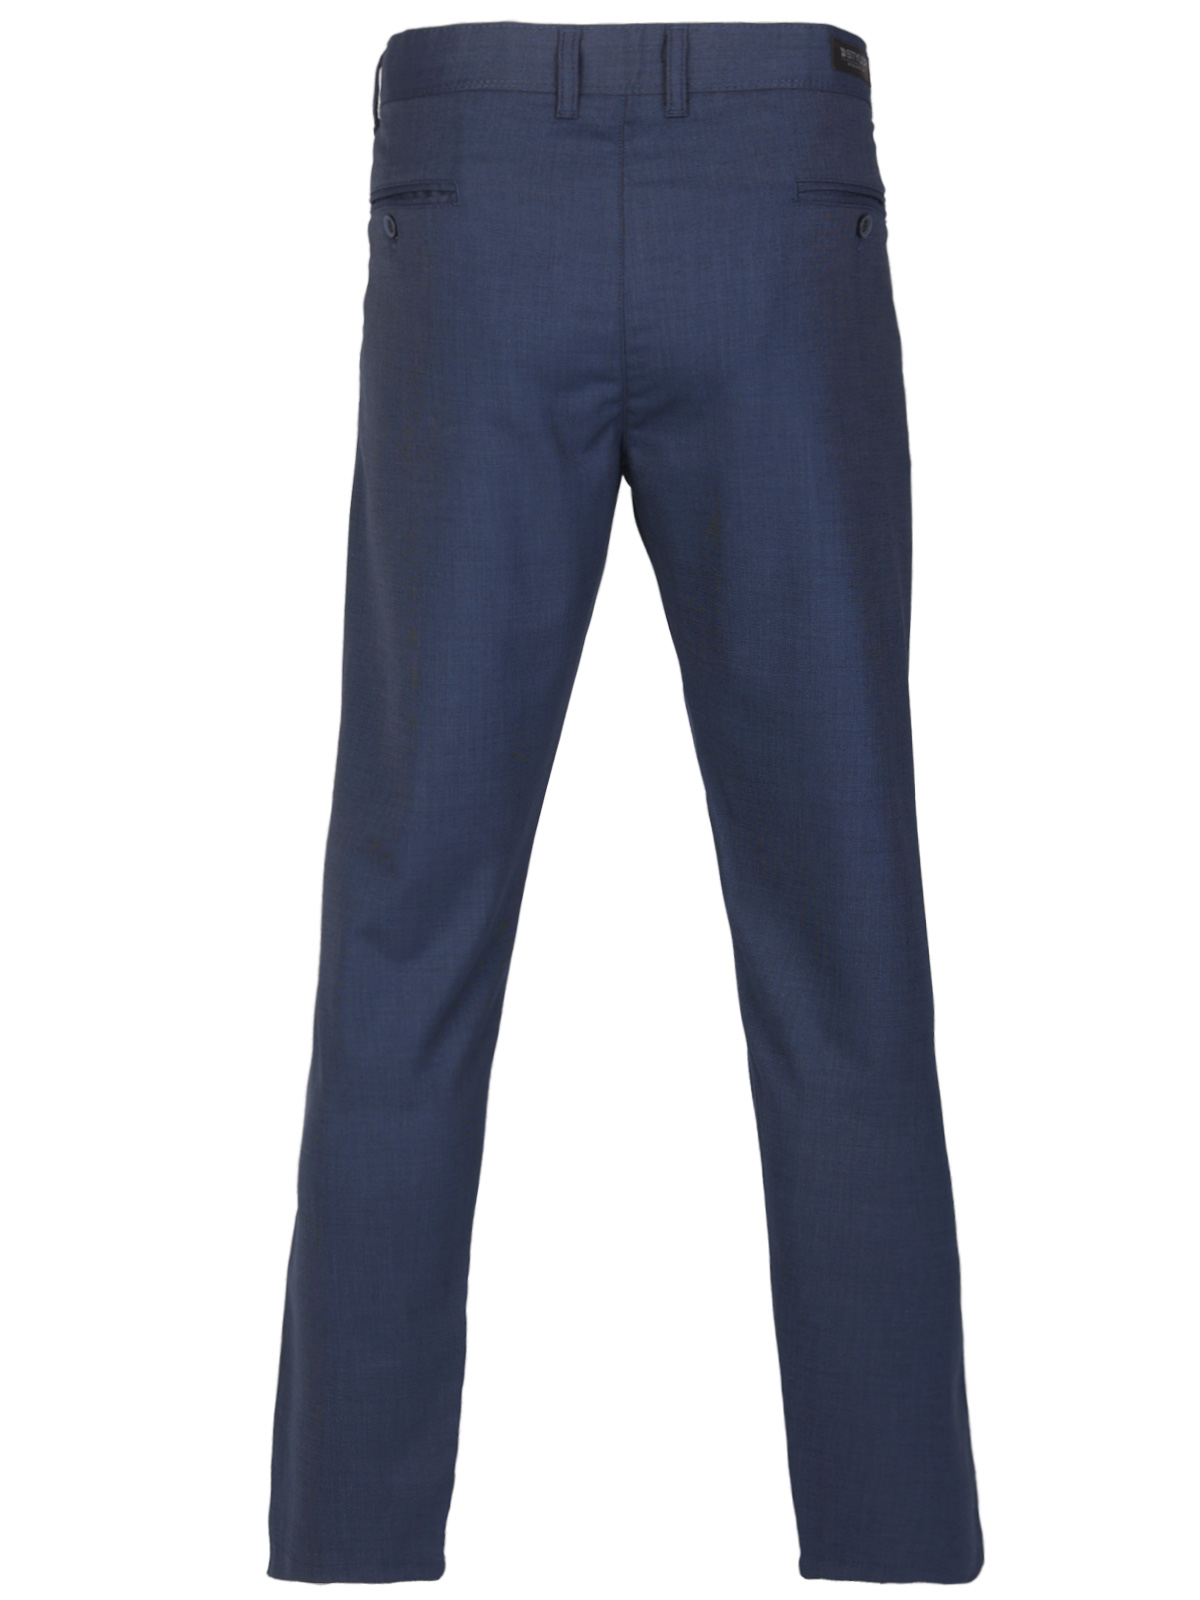 Σπορκομψό παντελόνι σε μπλε χρώμα - 60310 € 66.37 img2